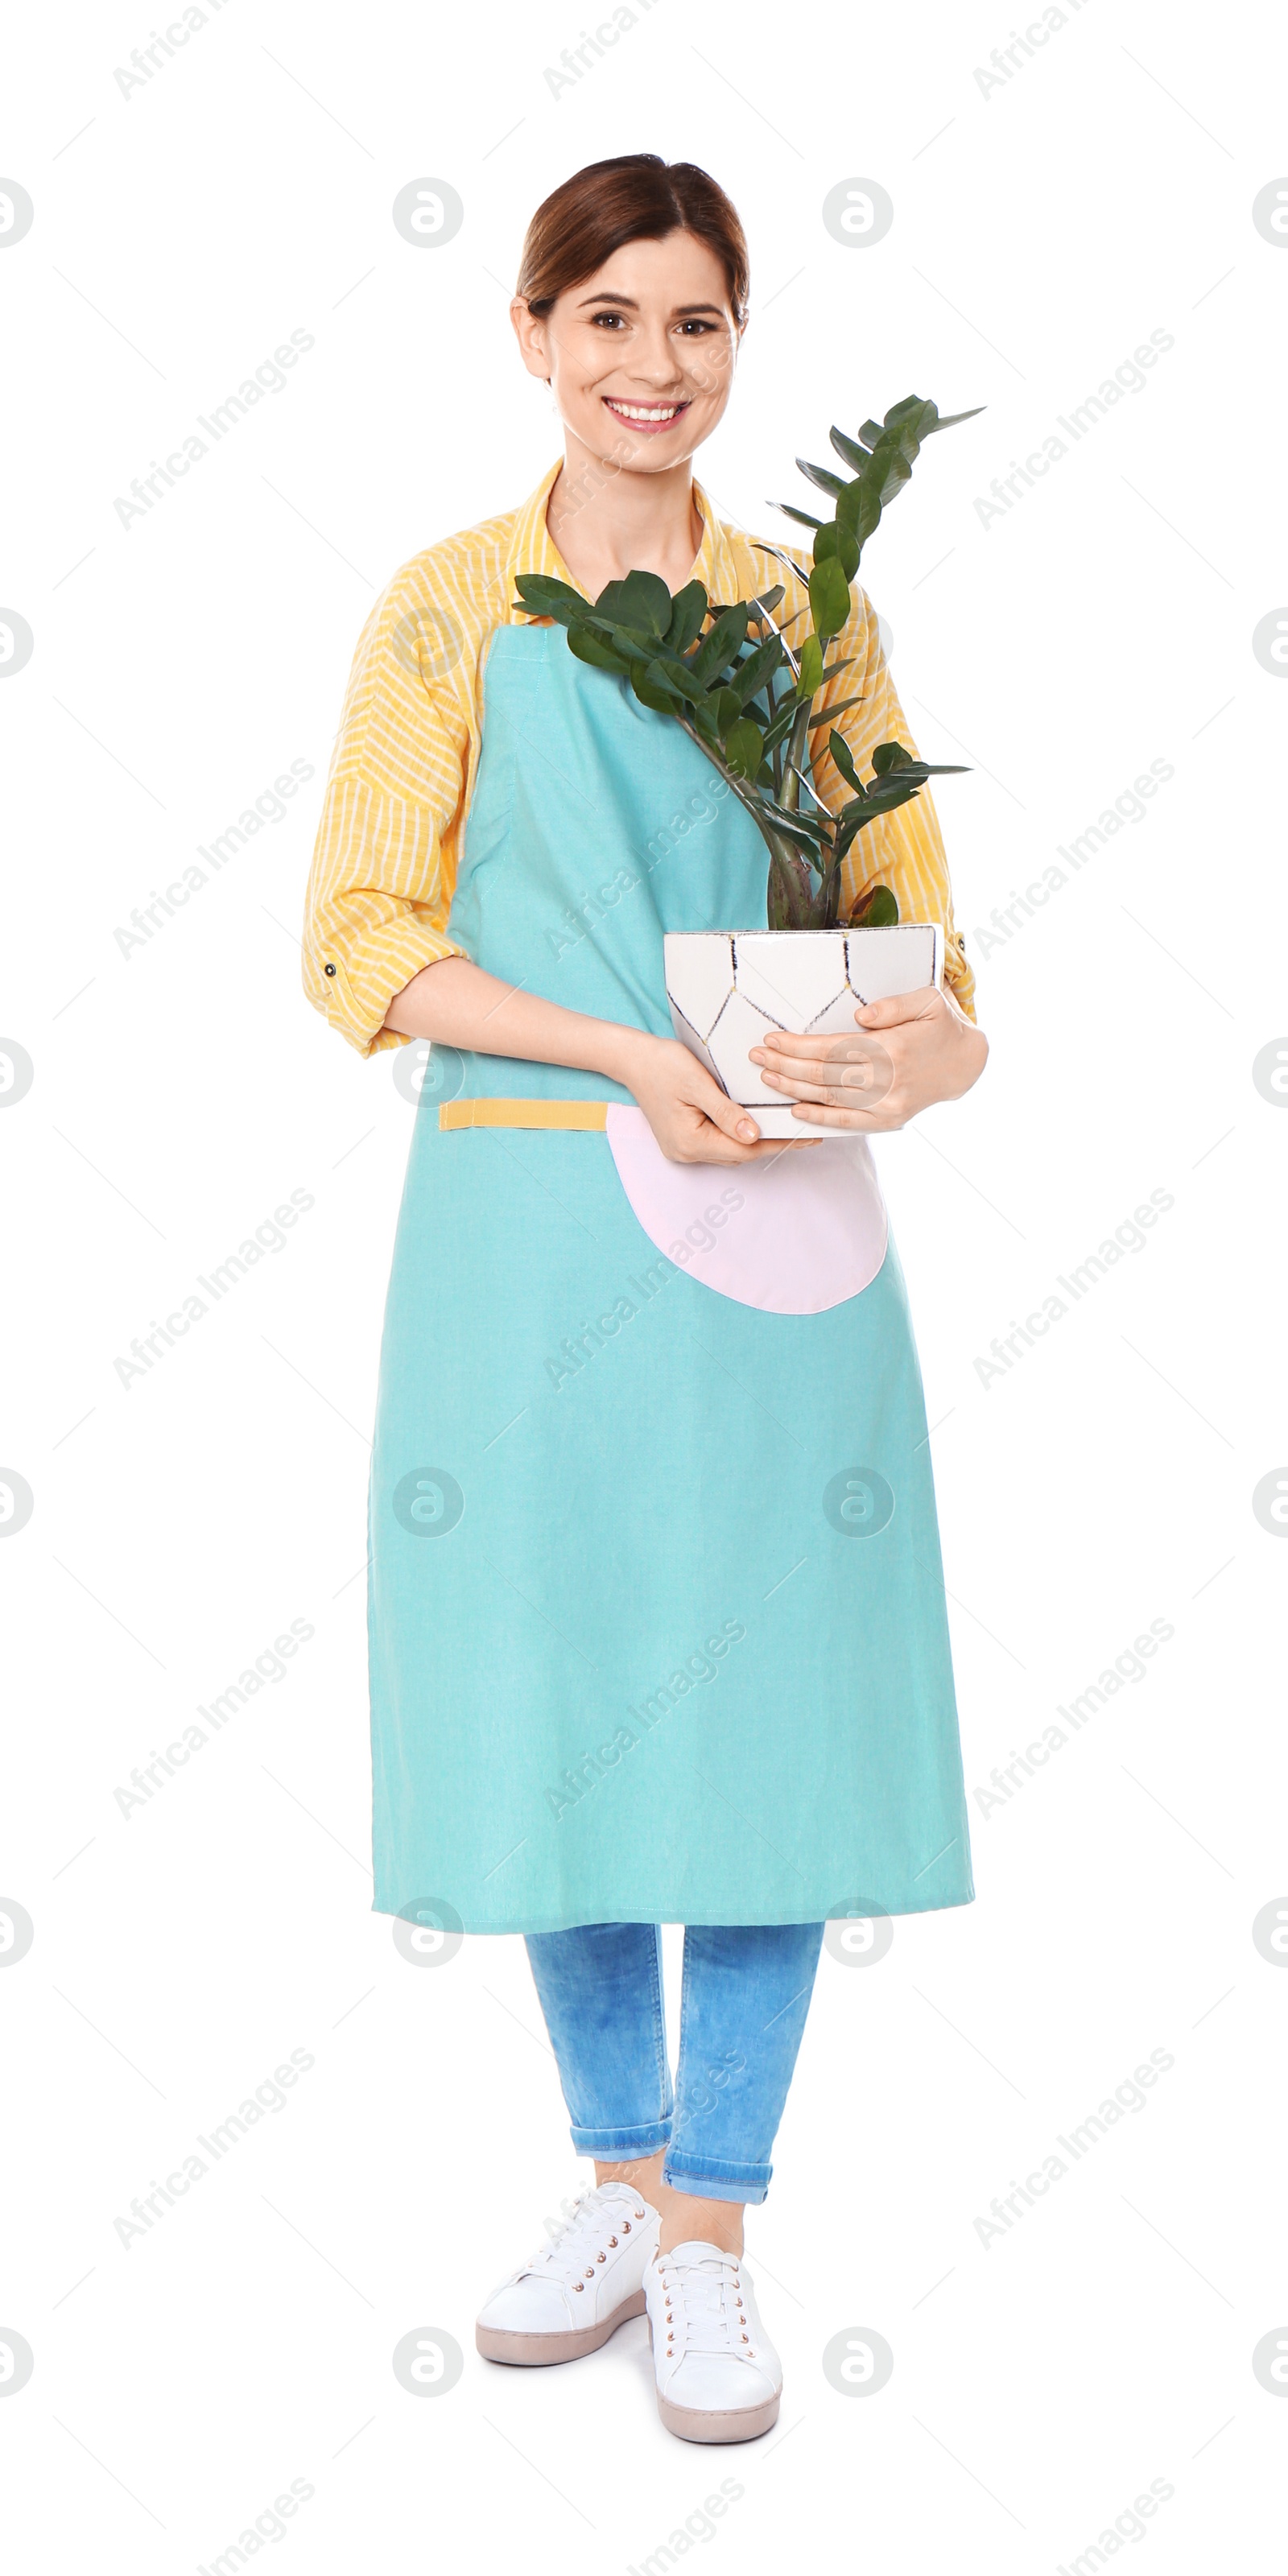 Photo of Female florist holding houseplant on white background